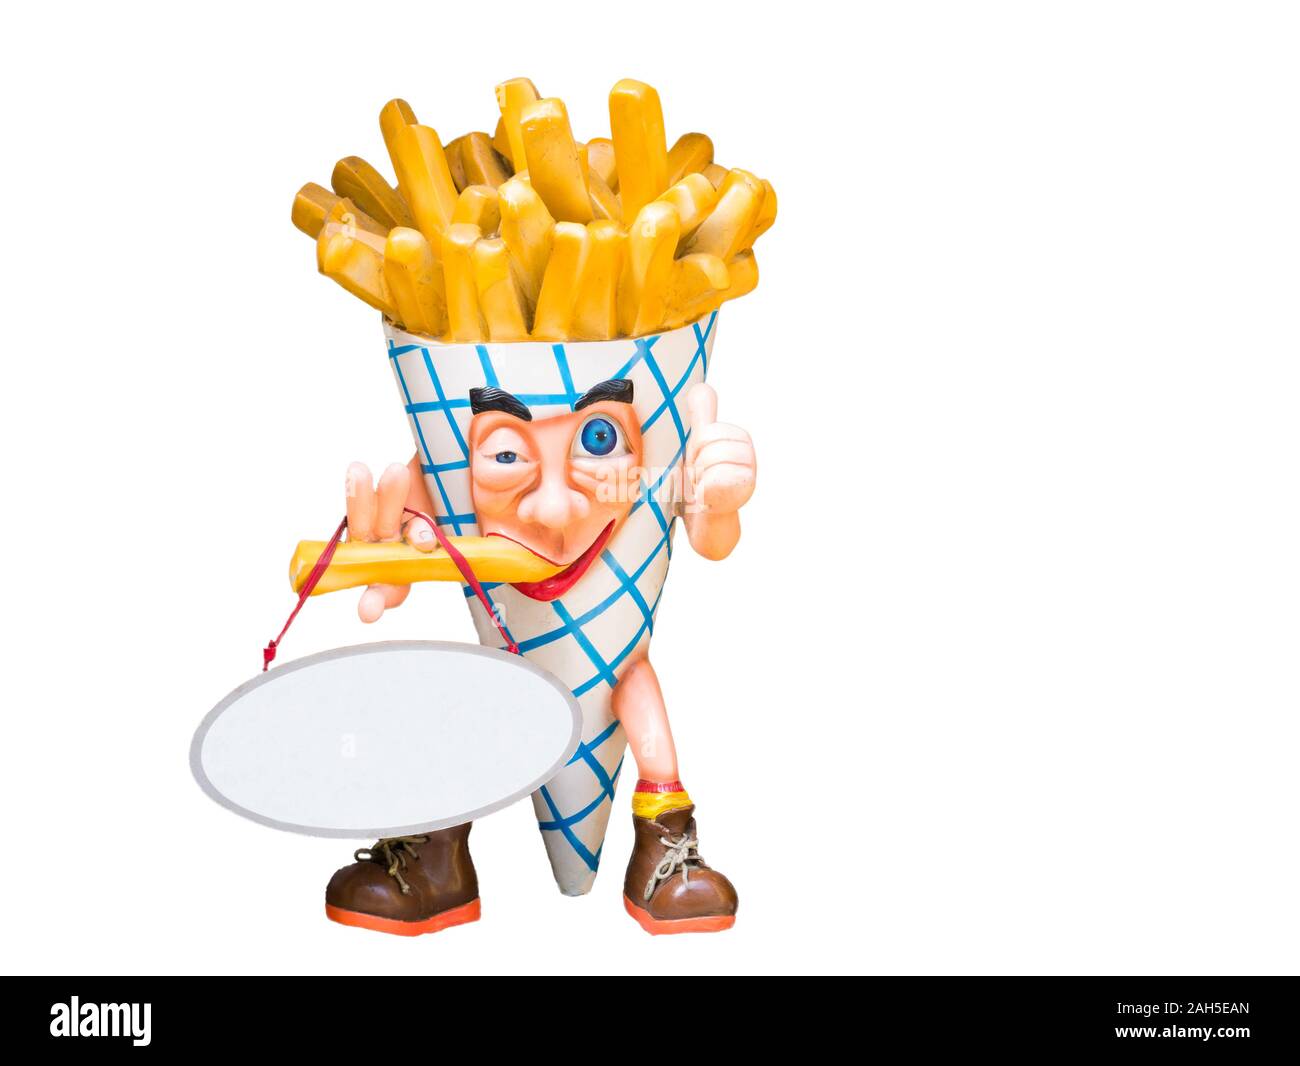 Cône de puce man eating puce sur fond blanc - modèle d'affichage publicitaire pour chip shop Banque D'Images